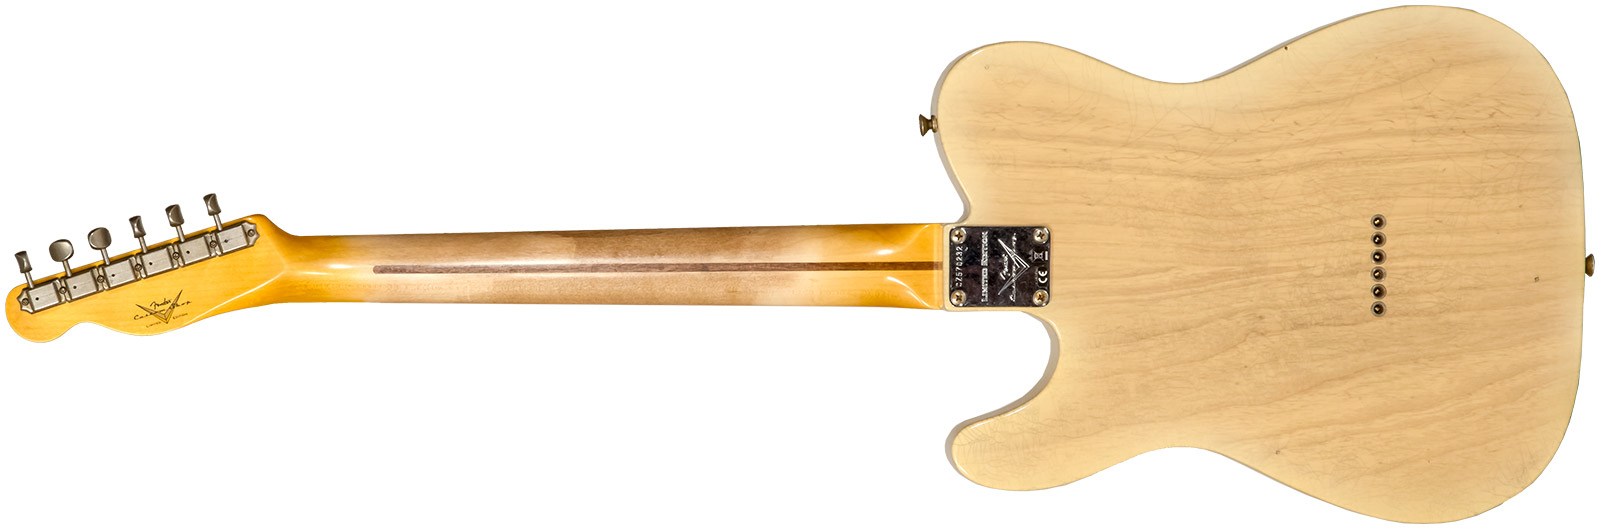 Fender Custom Shop Tele 1955 2s Ht Mn #cz570232 - Journeyman Relic Natural Blonde - Guitare Électrique Forme Tel - Variation 1